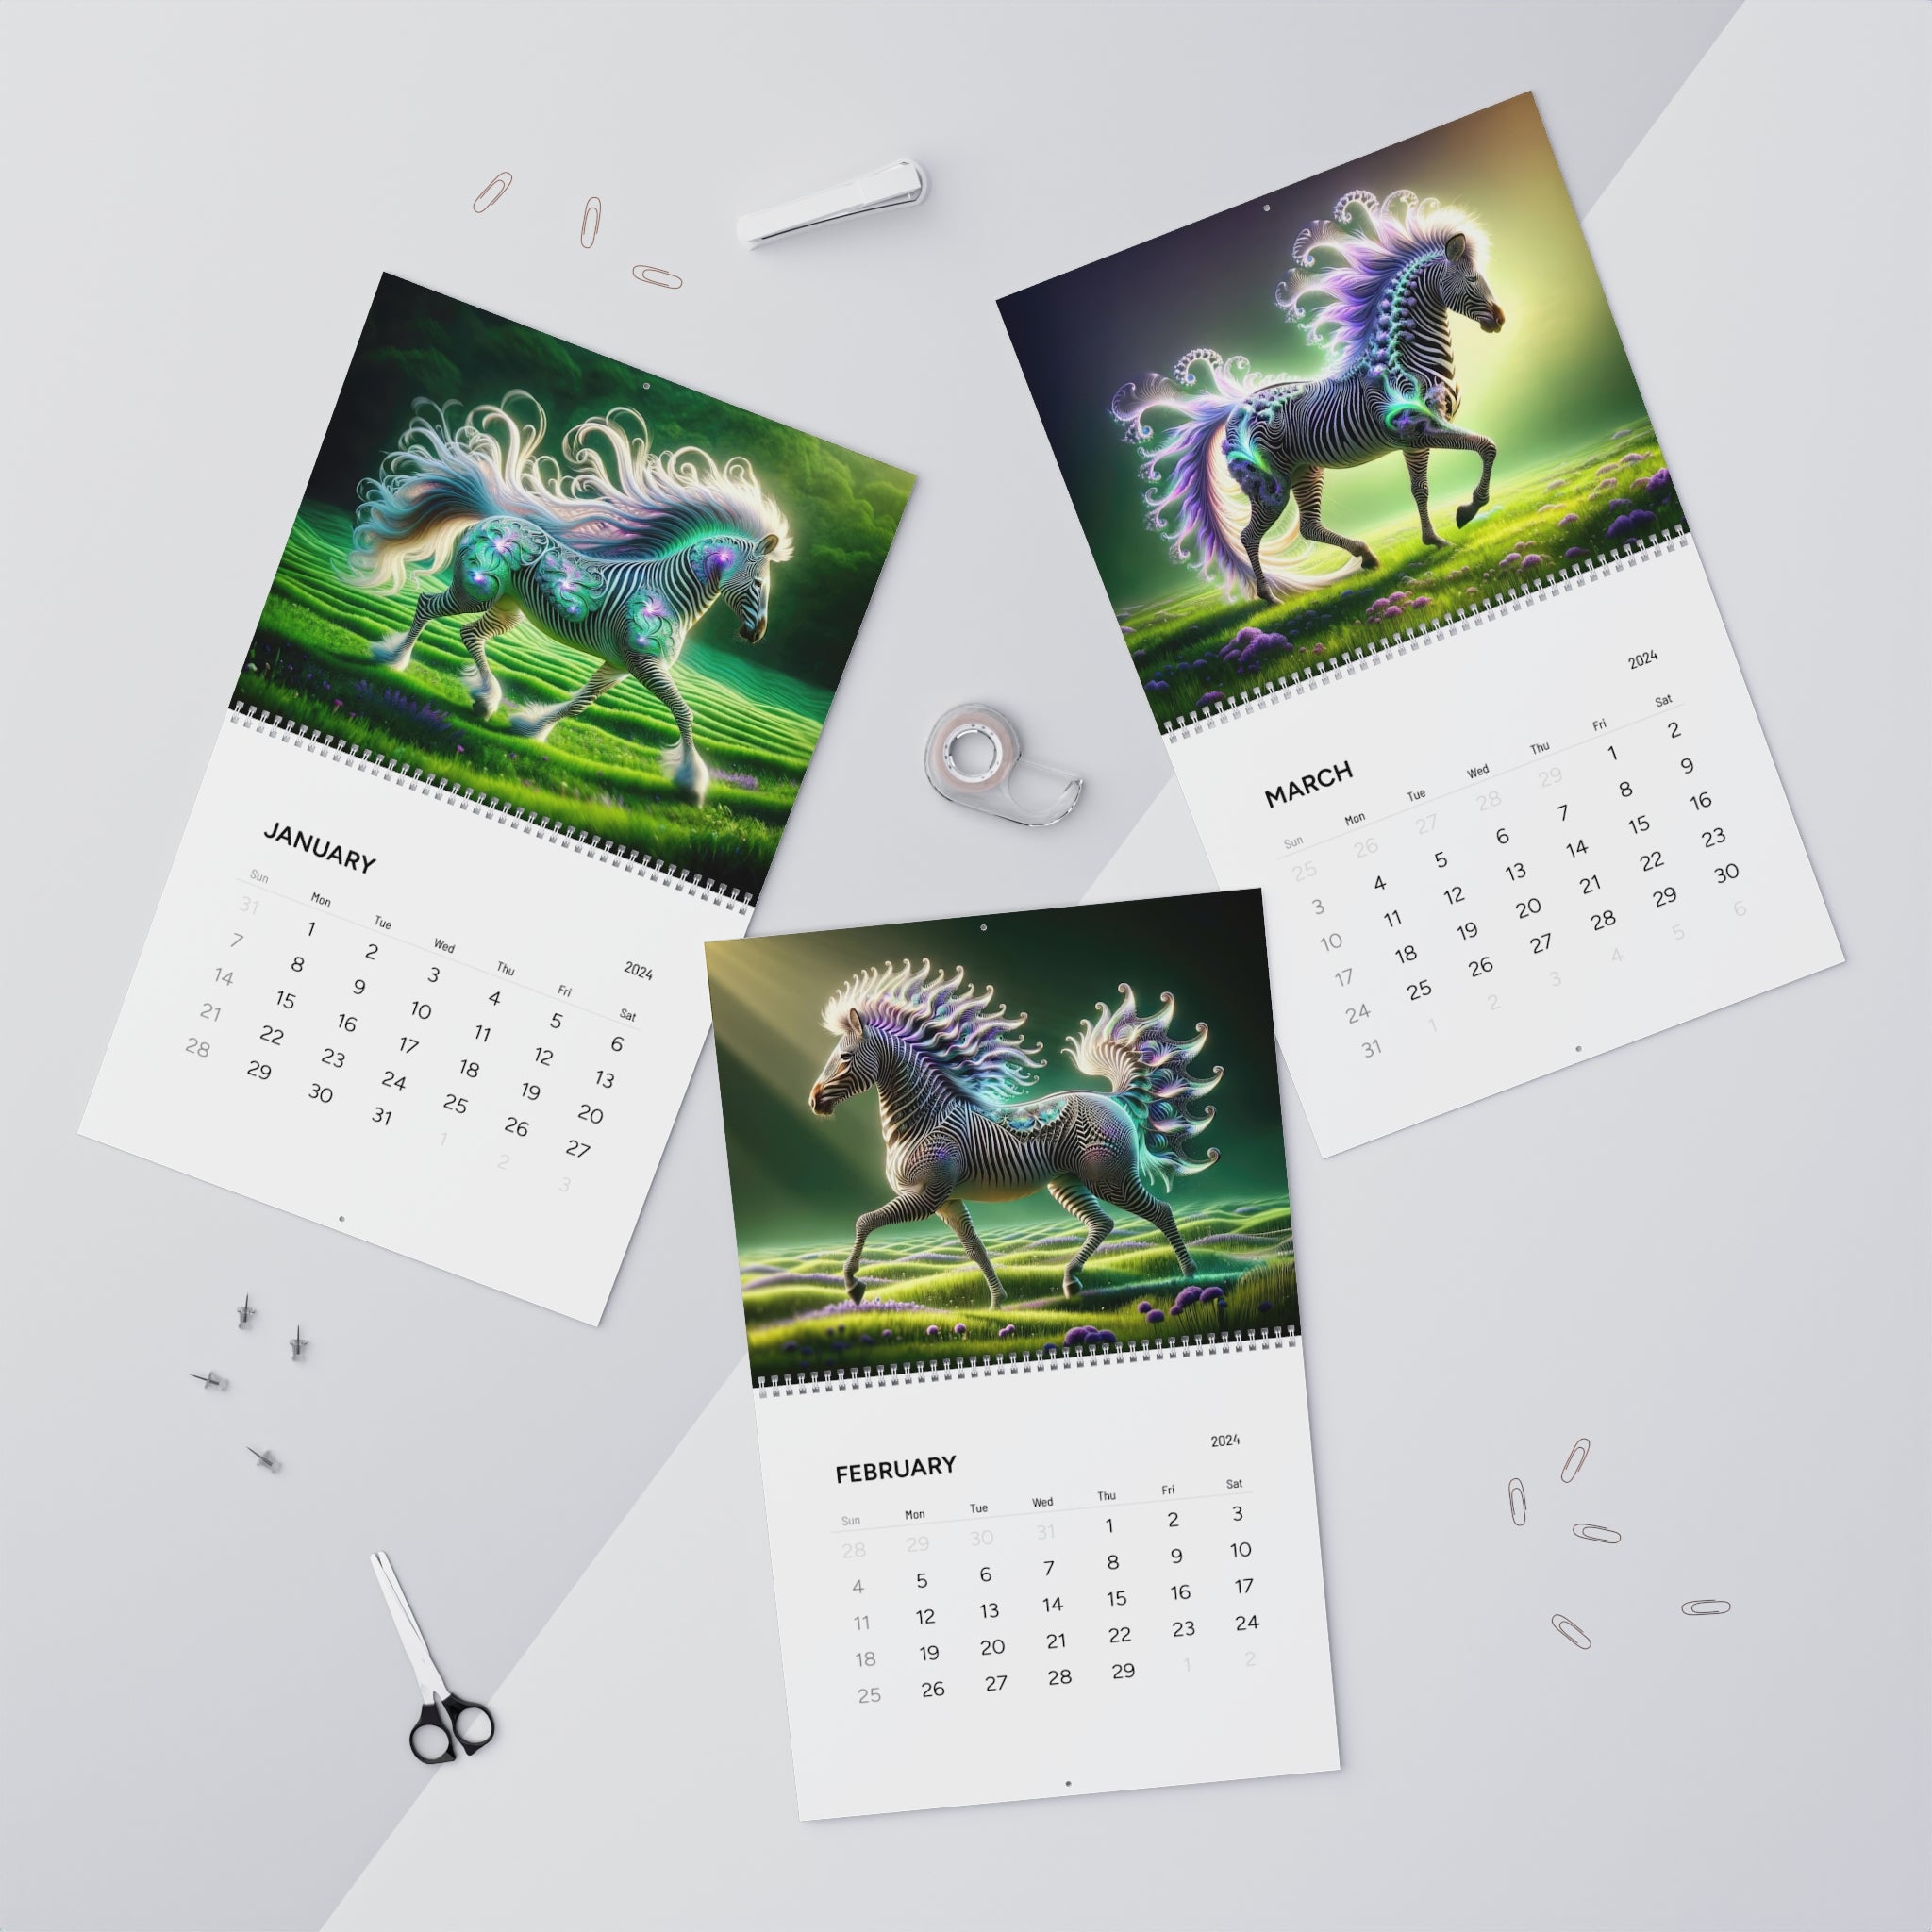 Zebra Spectrum Calendar (2024) V2